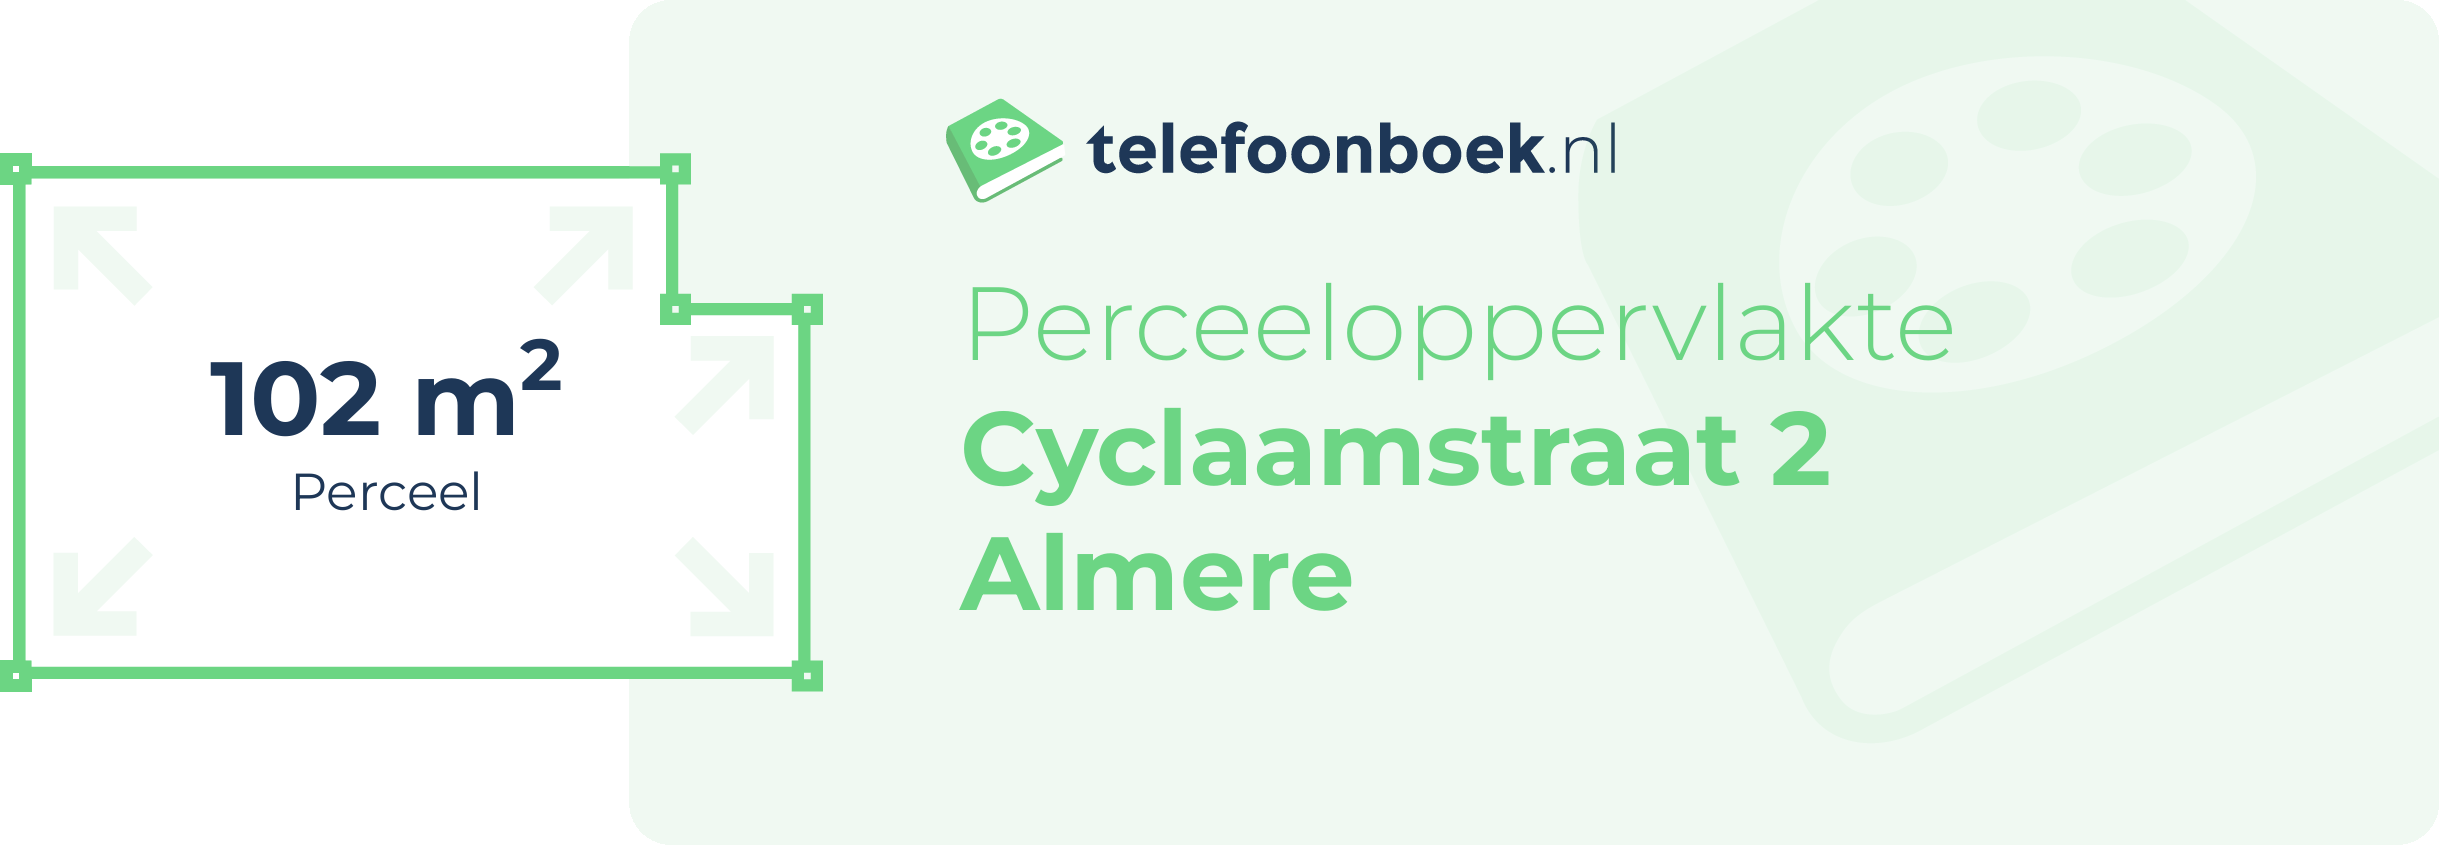 Perceeloppervlakte Cyclaamstraat 2 Almere